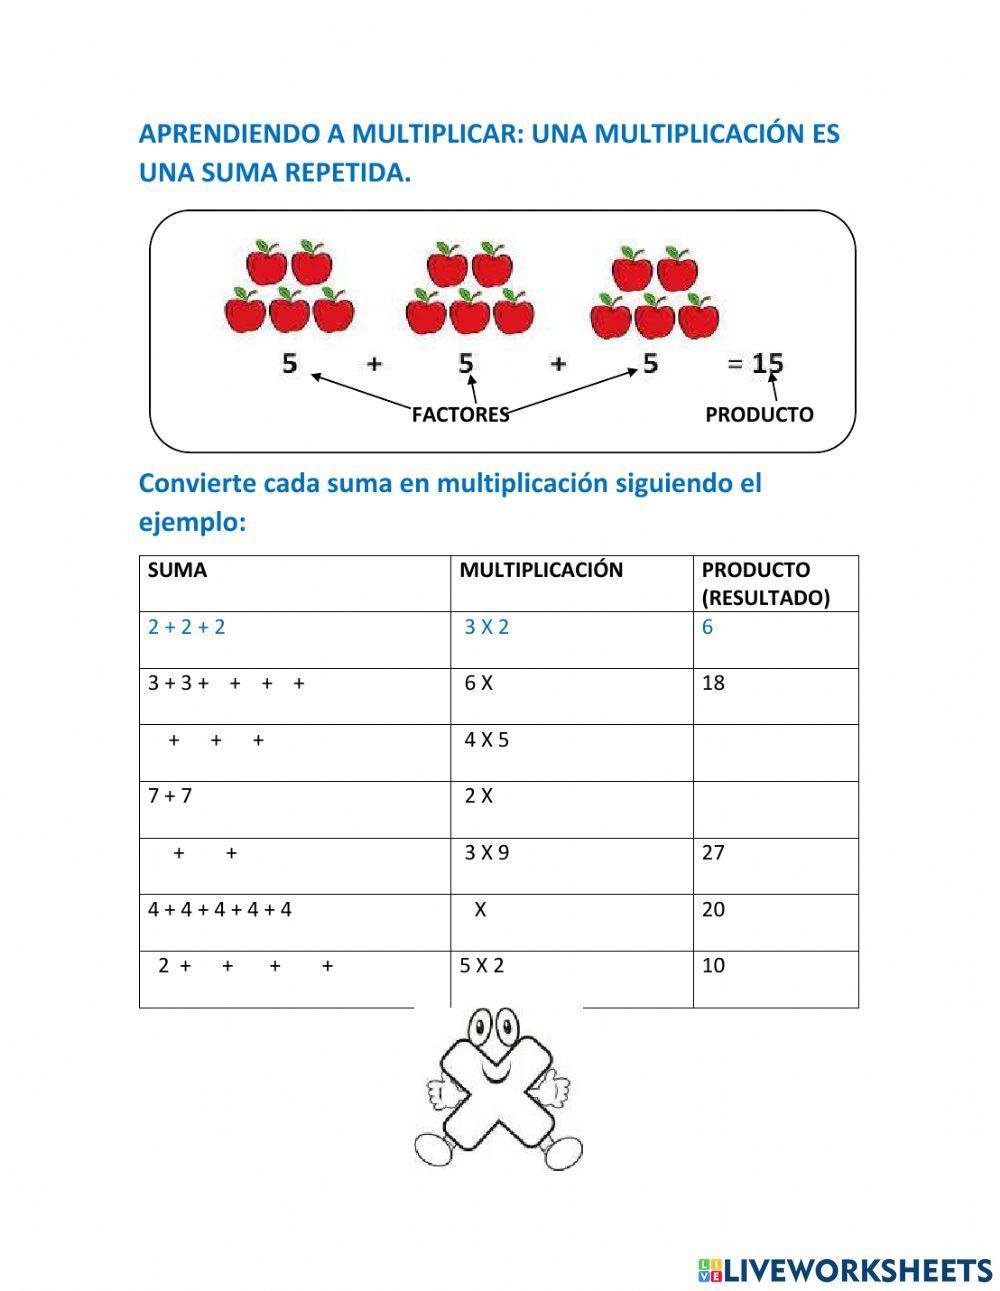 Multiplicación como suma repetida o iterada